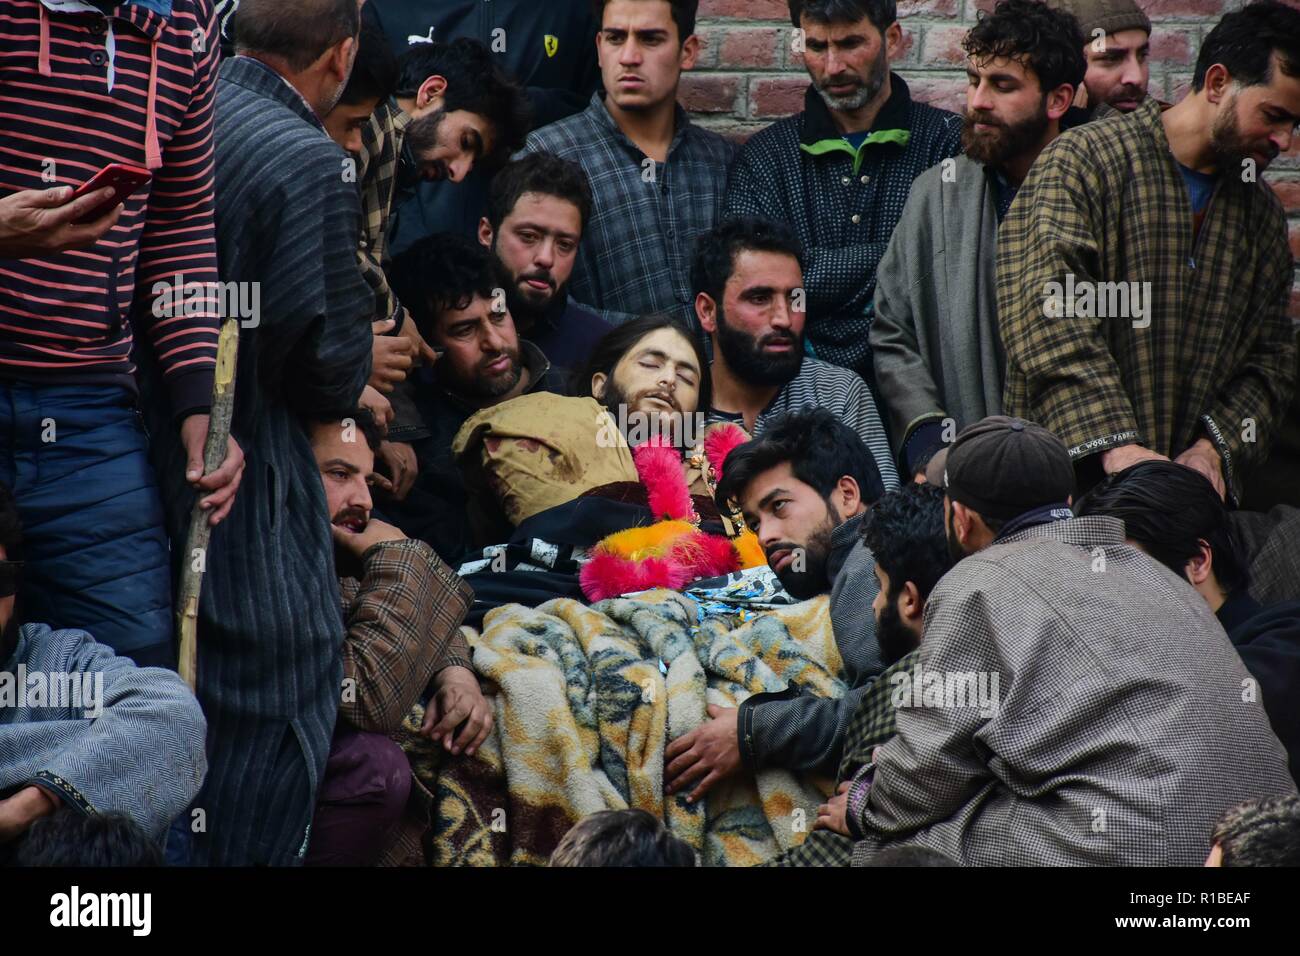 (Anmerkung des Editors: Das Bild zeigt den Tod.) Kaschmir Trauernden gesehen sind um den toten Körper eines lokalen Rebel, Liyaqat Ahmad während seiner Beerdigung Prozession in Pulwama, südlich von Srinagar, Indien verwalteten Kaschmir. Tausende von Menschen nehmen an der Beerdigung Gebete der zwei Hizbul Mujahideen Militanten, die von der Regierung Kräfte in eine Begegnung im Tikken im Süden von Kaschmir Pulwama getötet wurden. Stockfoto